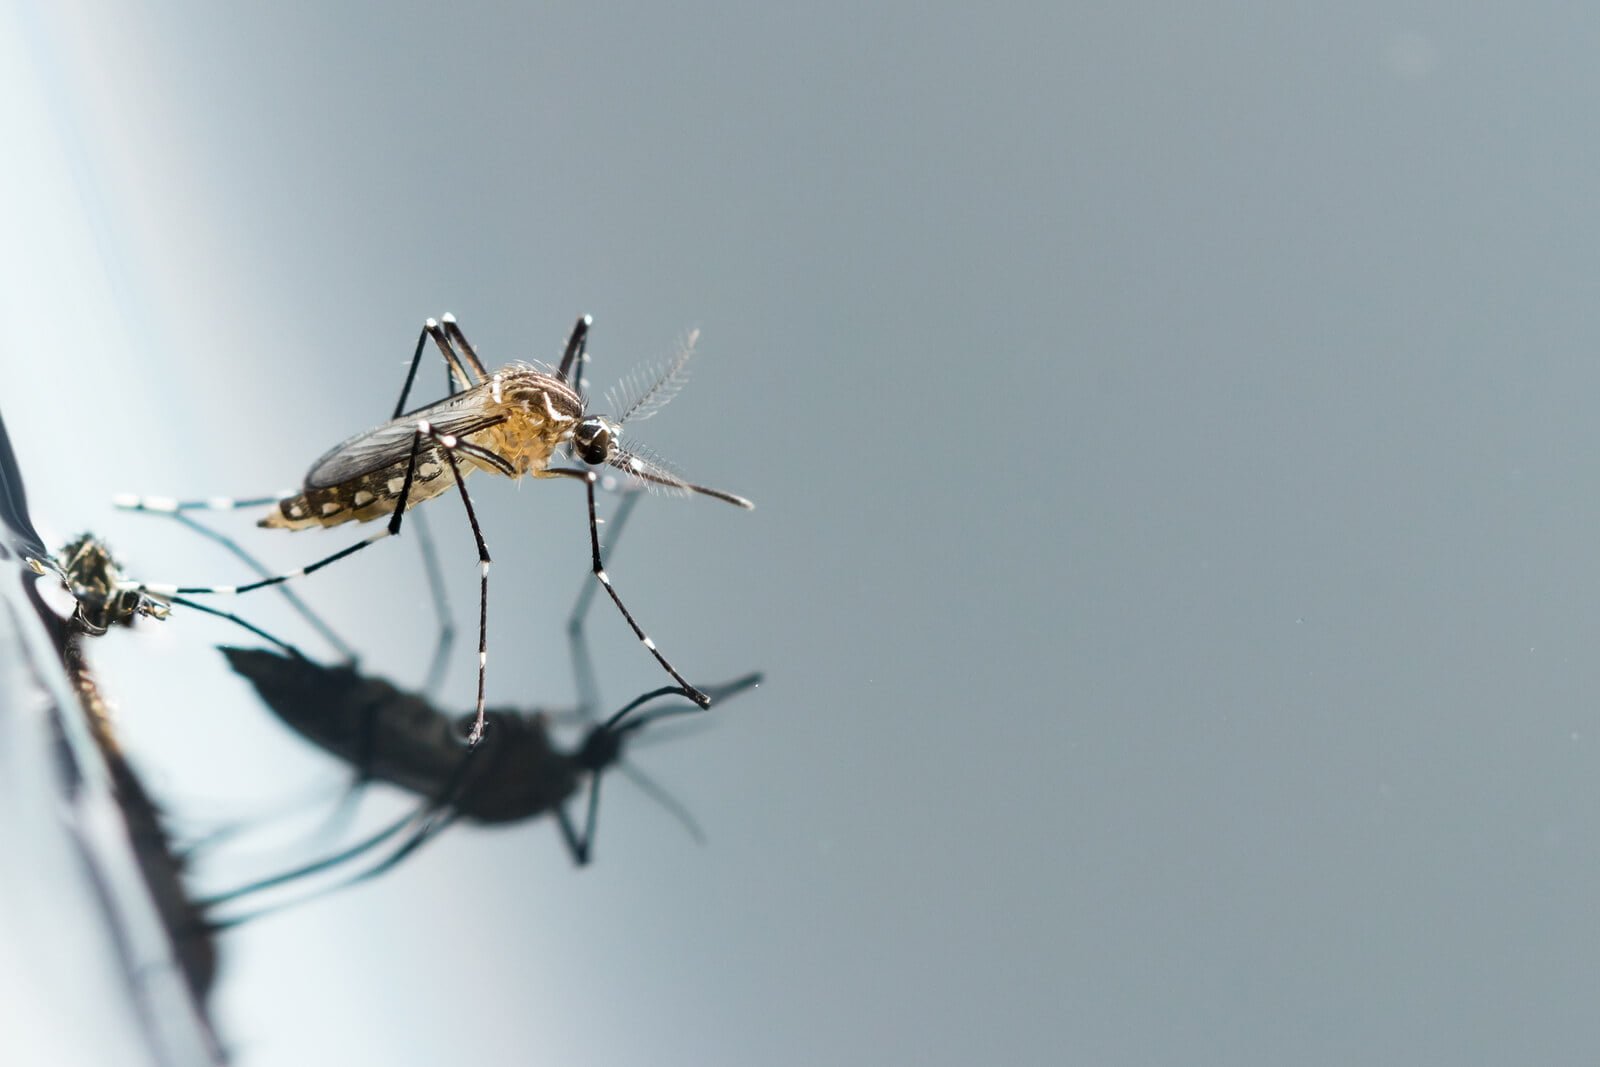 Série do Portal Pragas e Eventos que analisa o Plano Nacional de Combate ao Dengue (PNCD) – 02 Entenda as ações de controle do mosquito no país